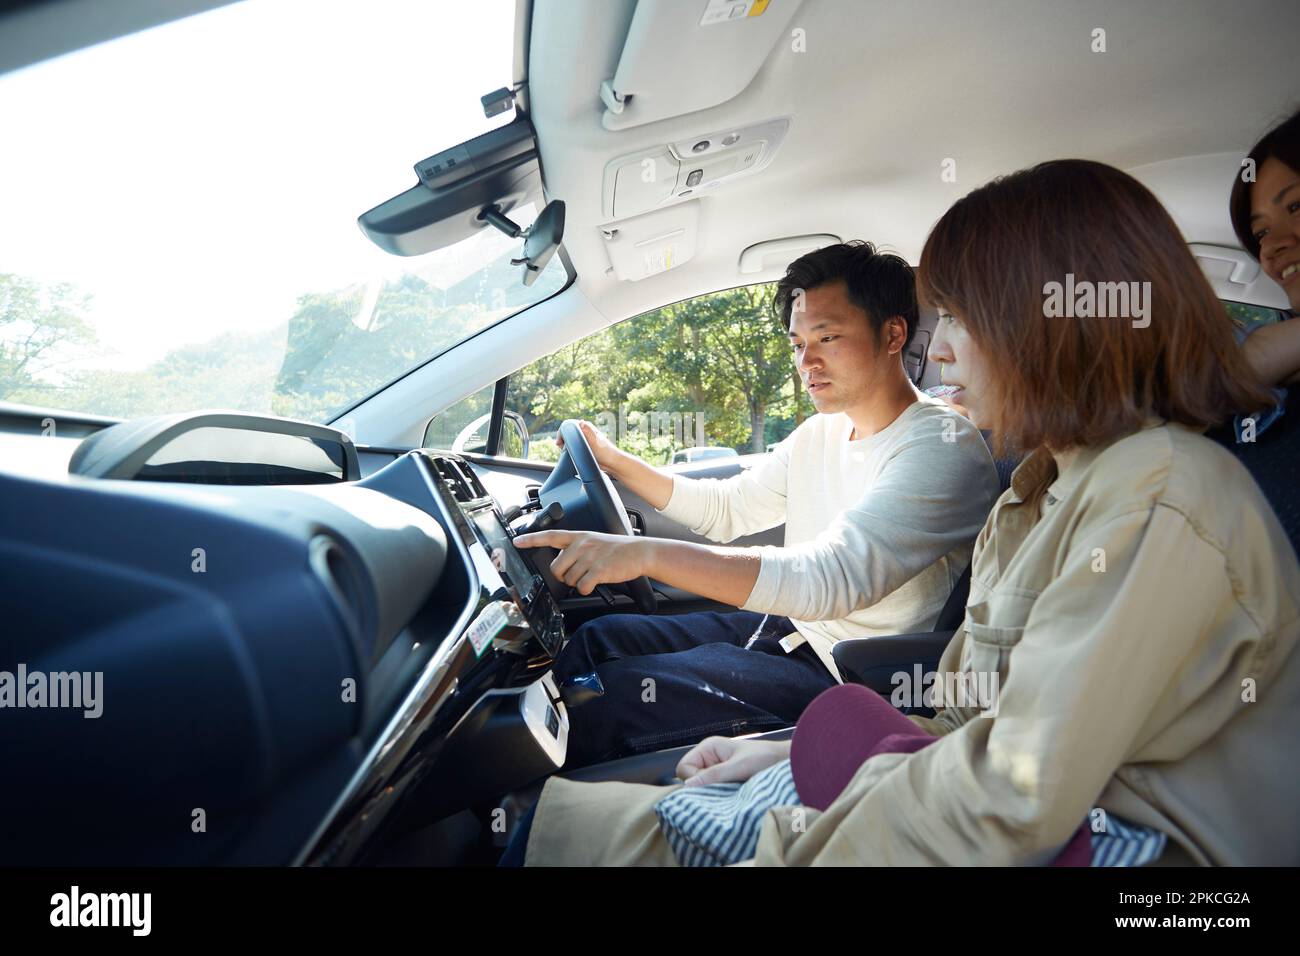 Dentro de un coche donde un hombre y una mujer están hablando y señalando el sistema de navegación del coche Foto de stock